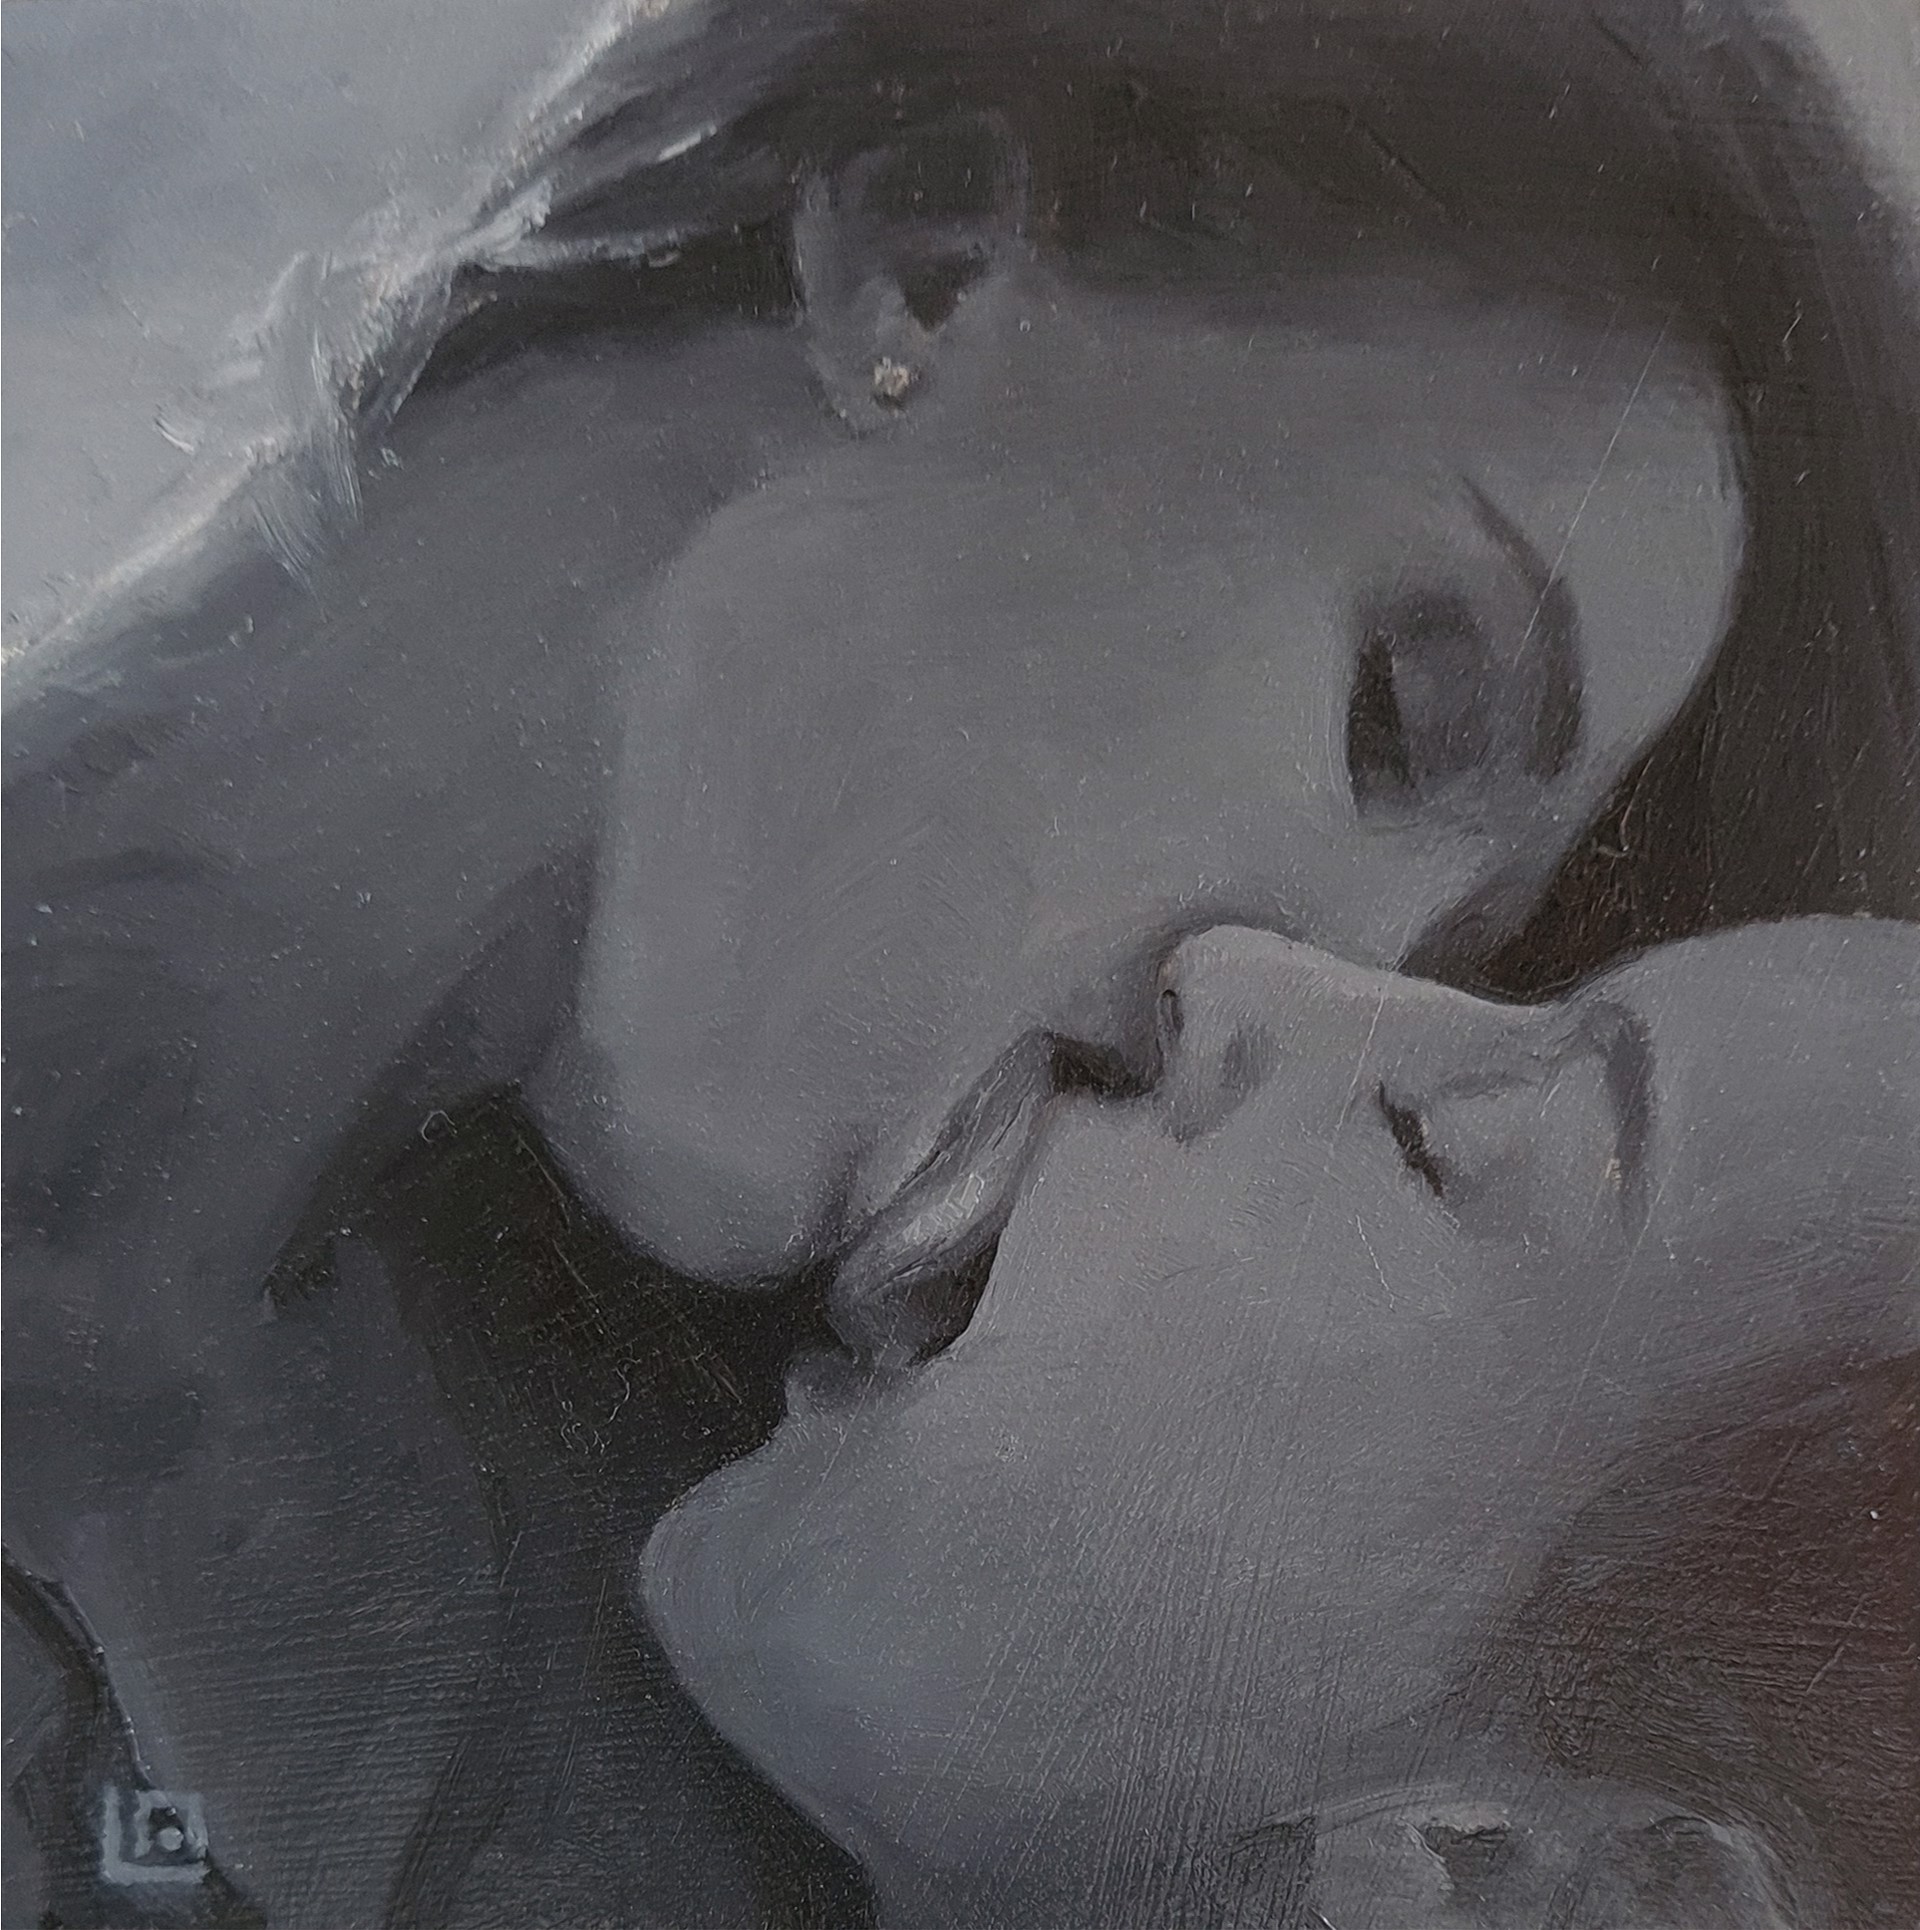 The Kiss #6 by Linda Adair